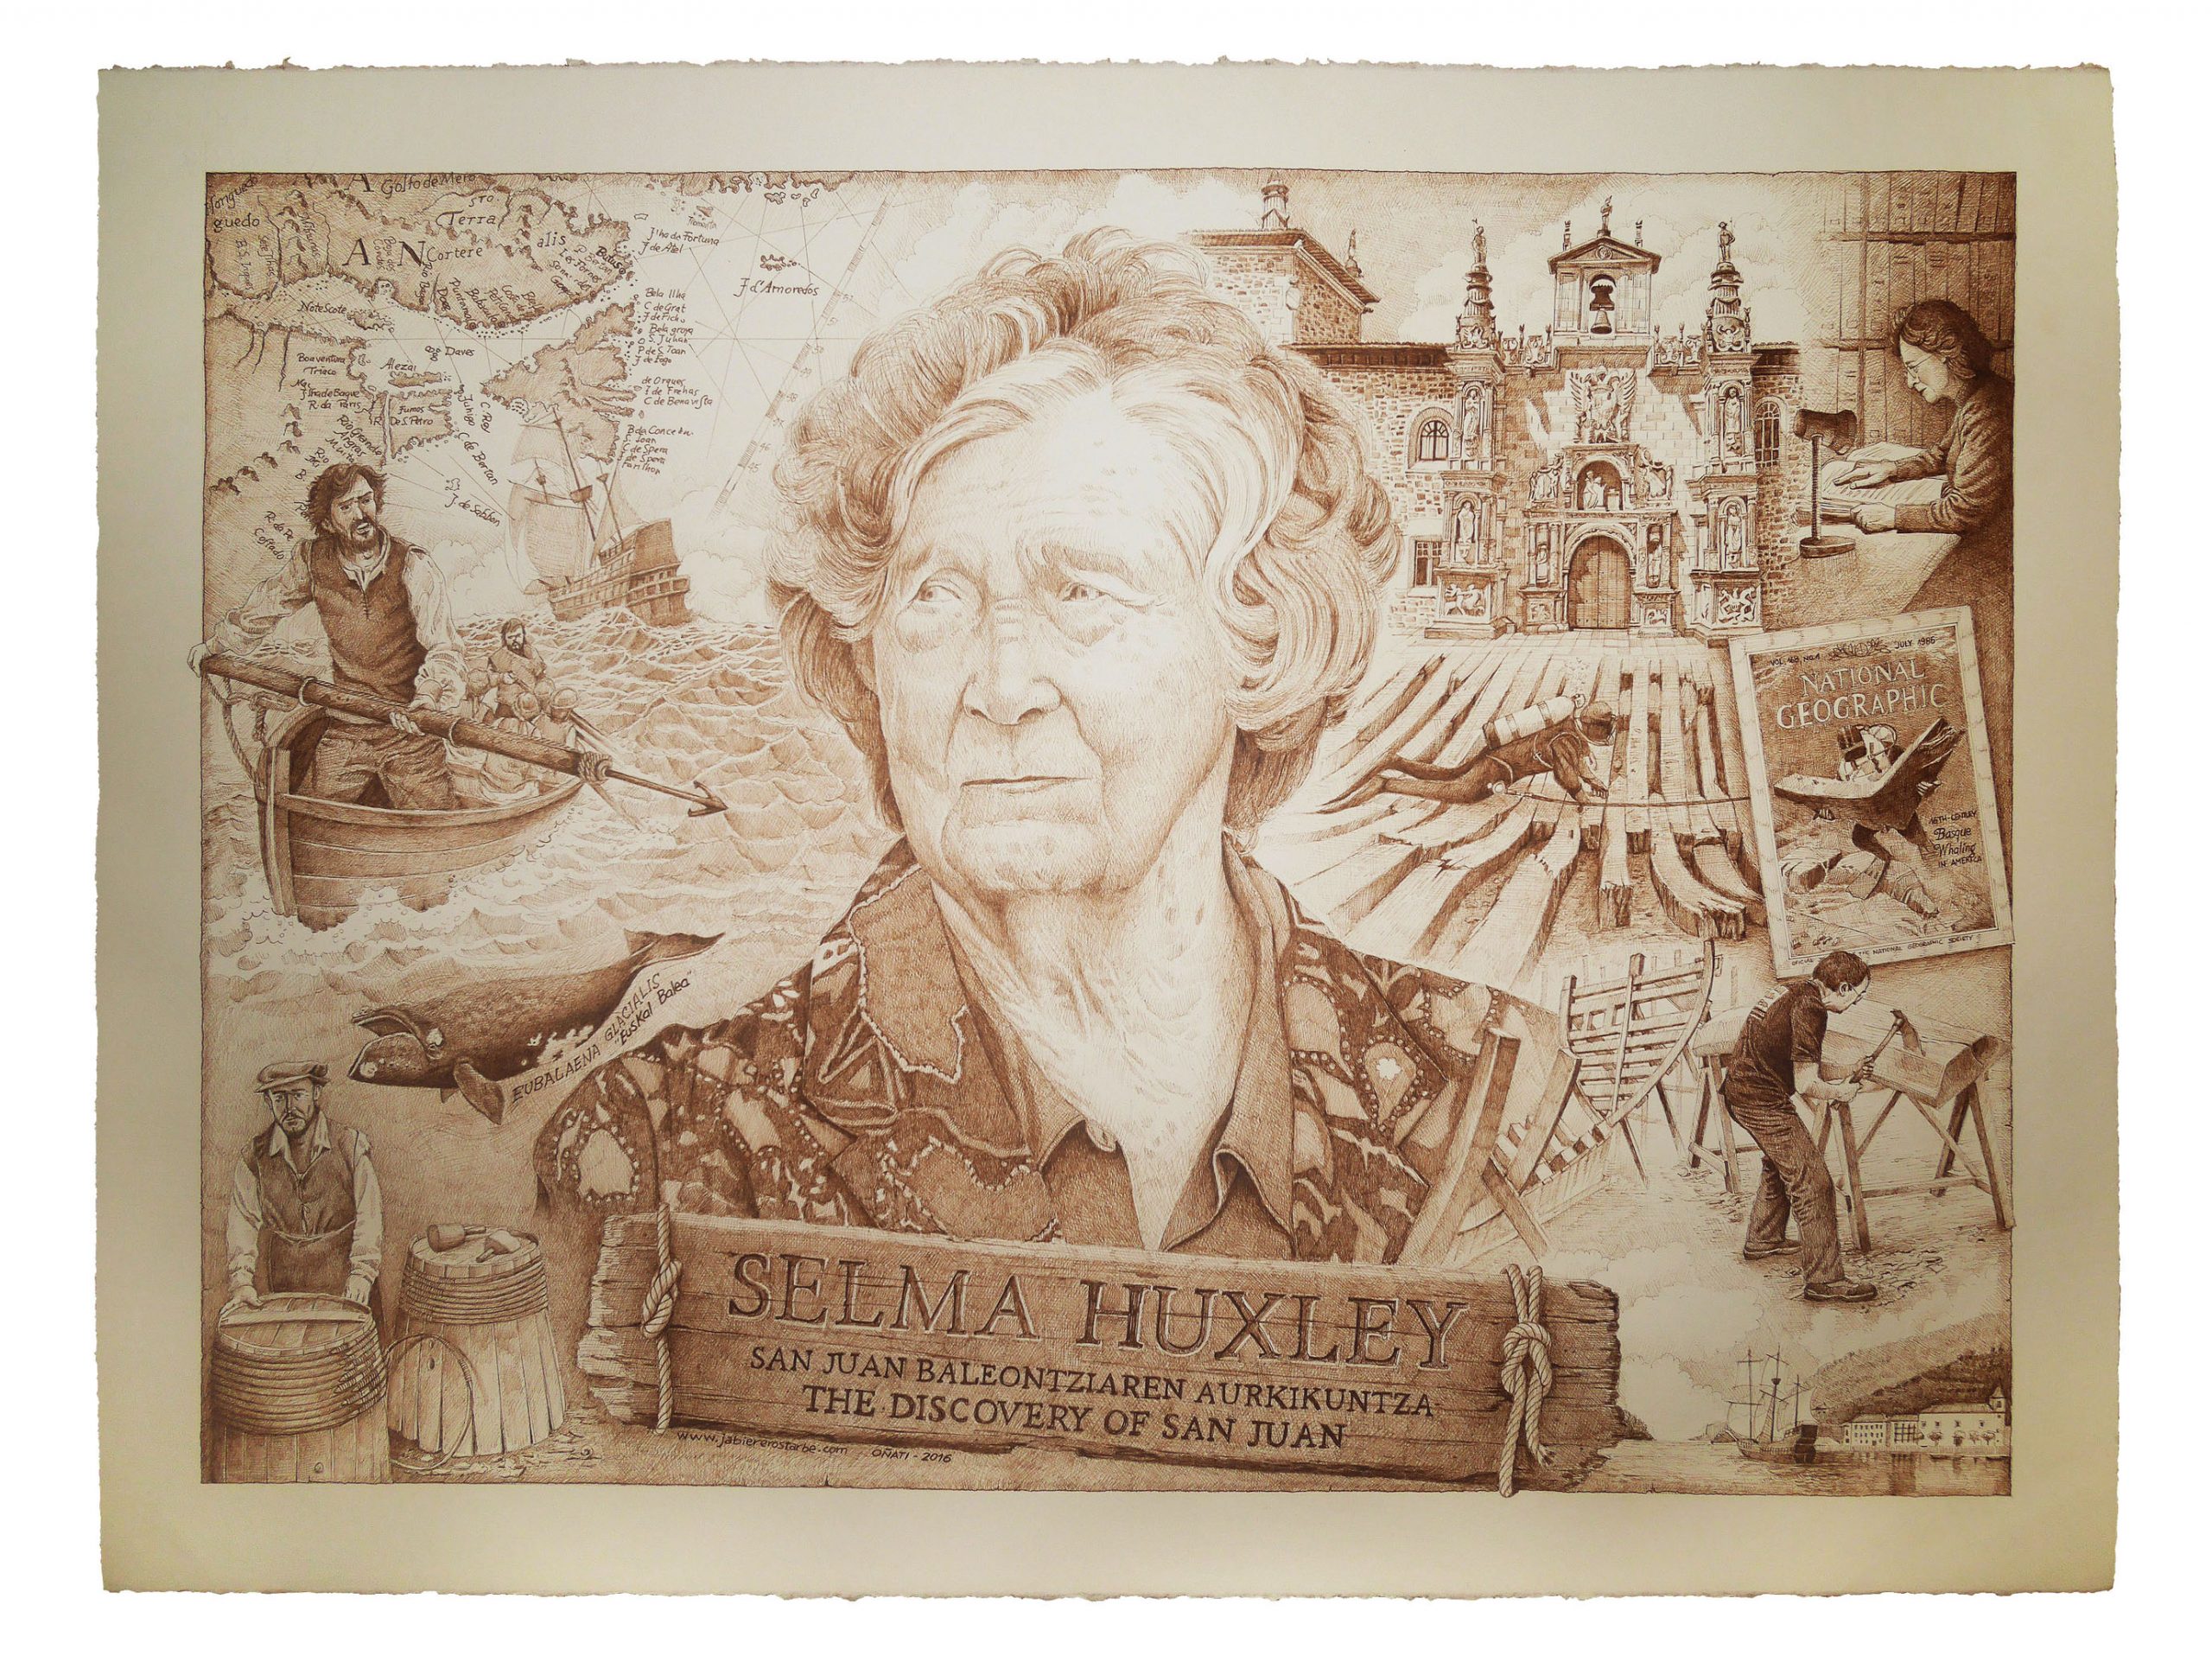 Selma Huxley